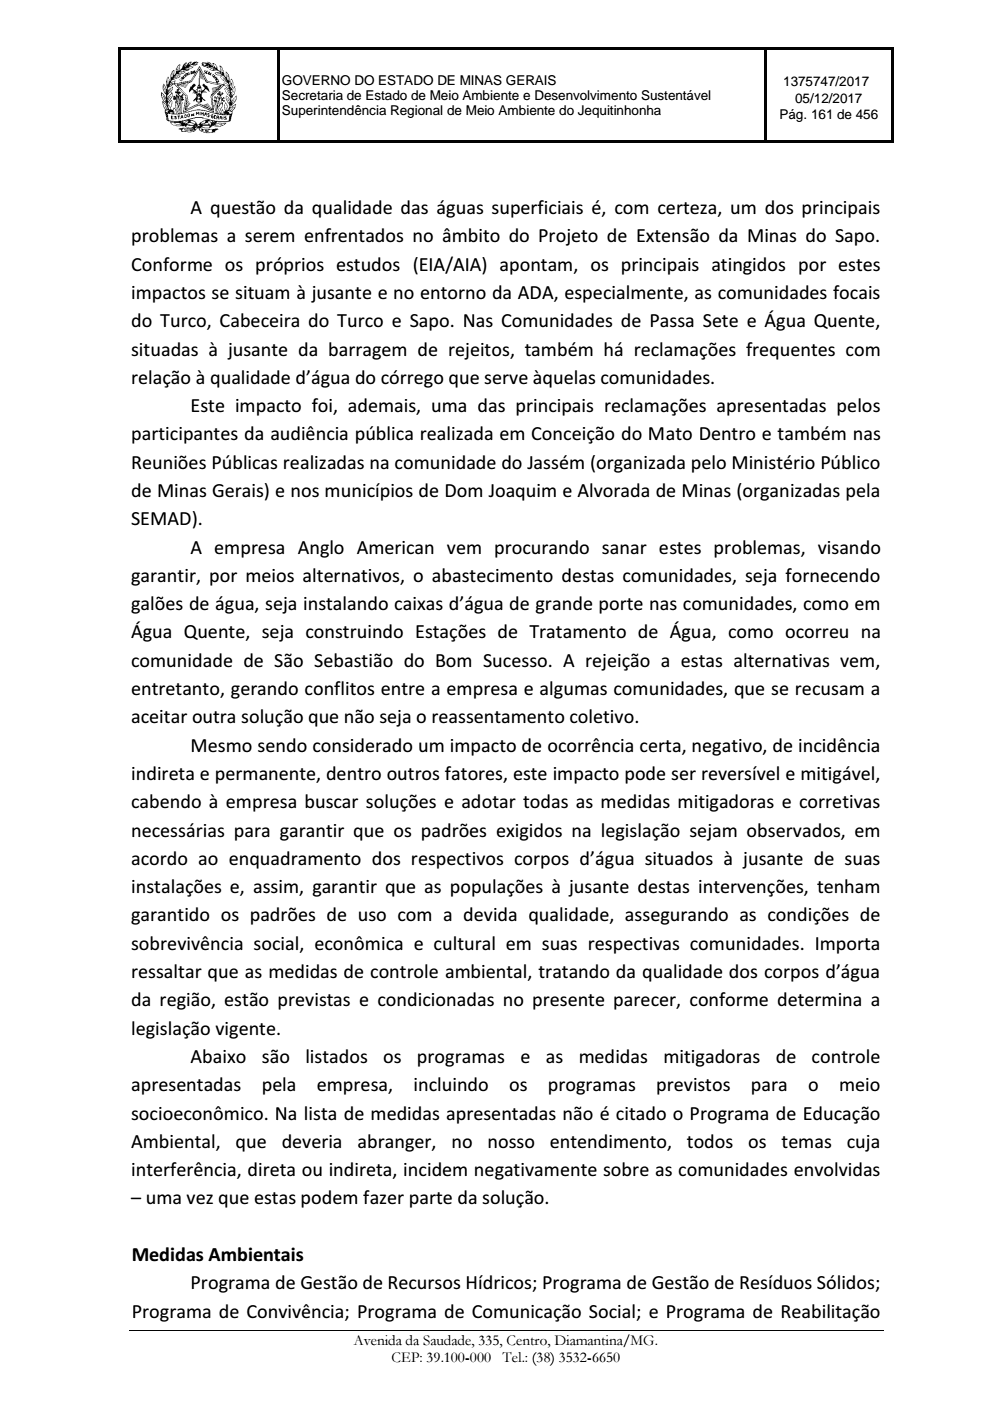 Page 161 from Parecer único da Secretaria de estado de Meio Ambiente e Desenvolvimento Sustentável (SEMAD)